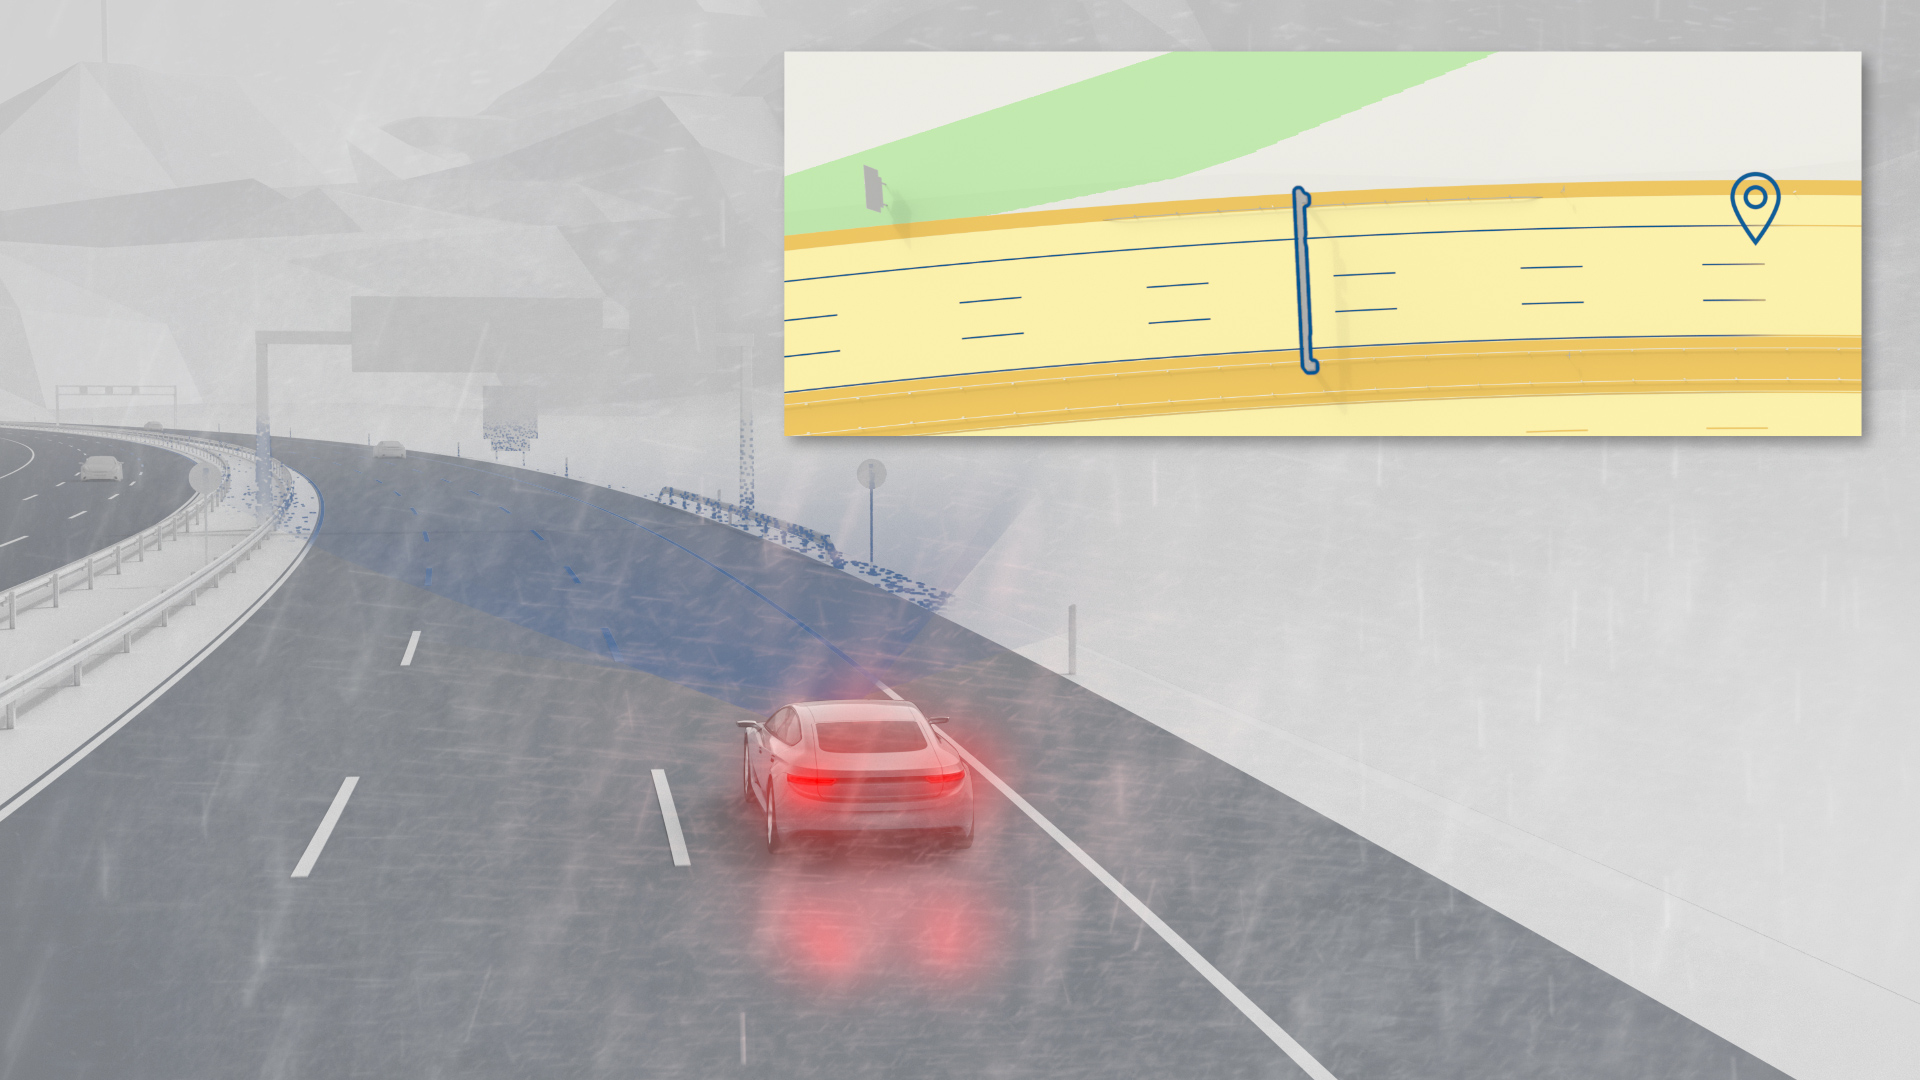 Guida autonoma sicura con Bosch:  la differenza è nei centimetri